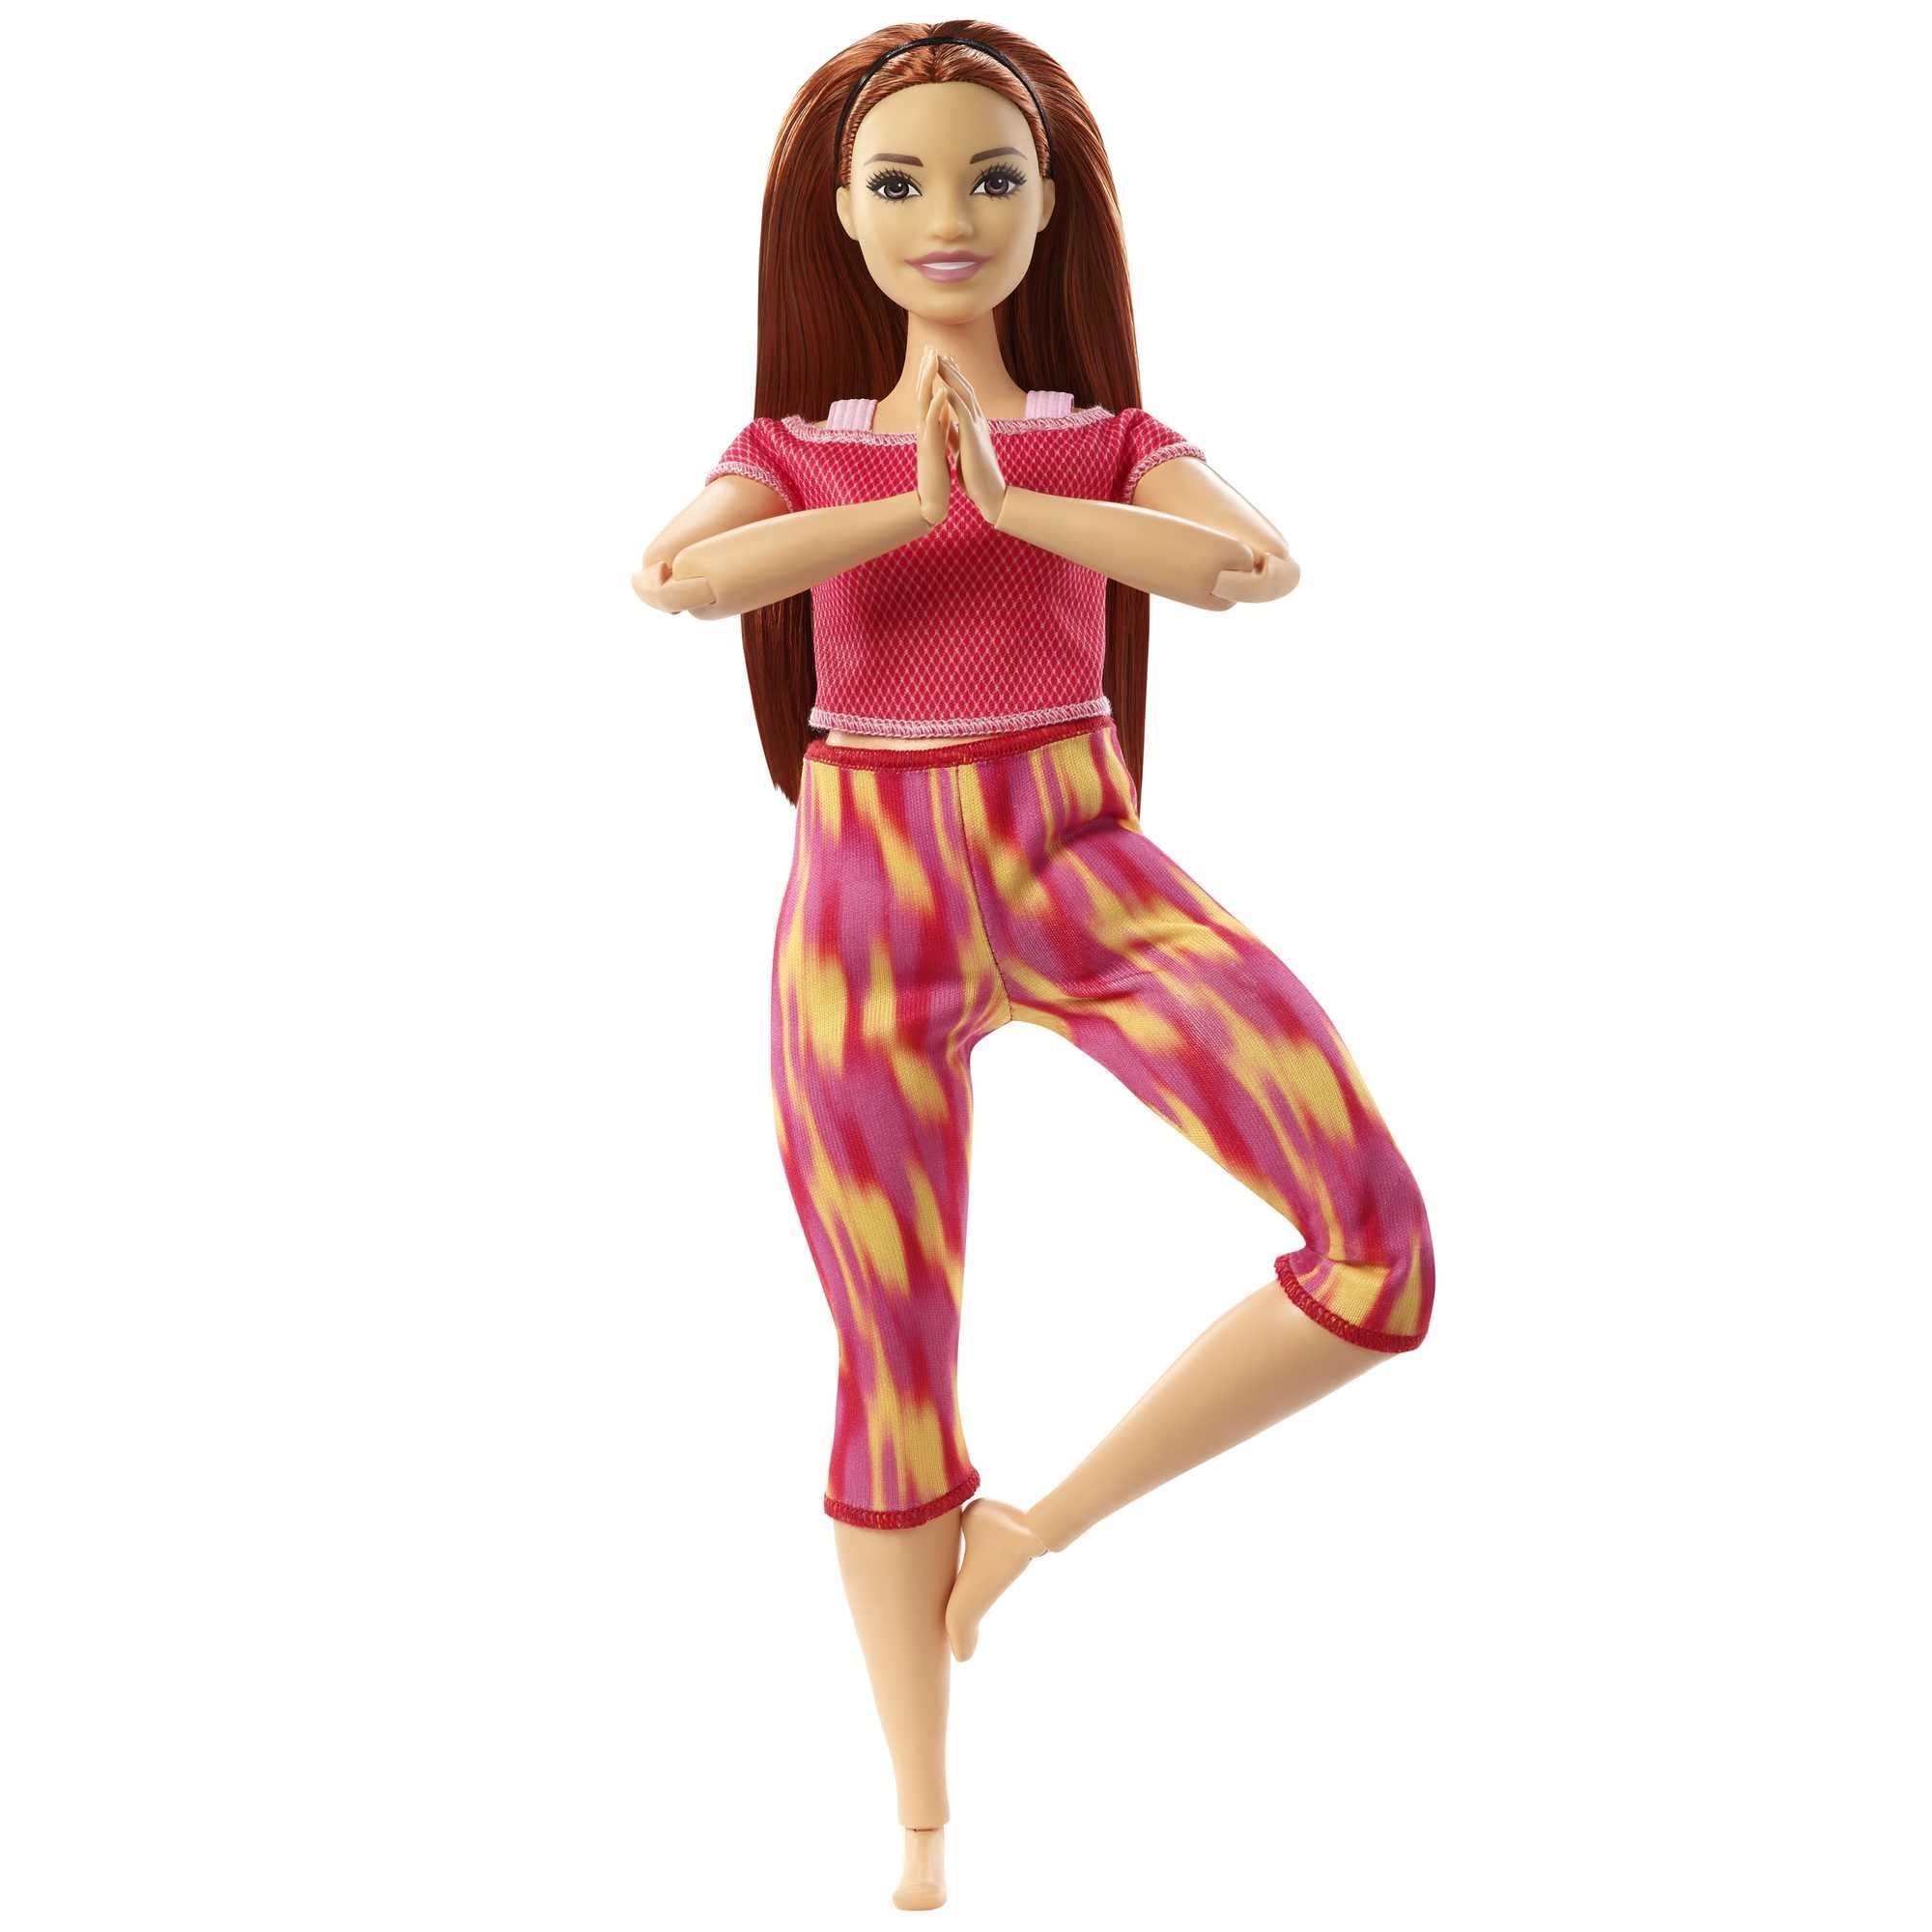 Abordable Barbie Made to Move poupée articulée Fitness Ultra Flexible rousse, Legging dégradé Rose et Jaune et 22 Points d´articulations, Jouet pour Enfant, GXF07 v8PdCgo9X vente chaude